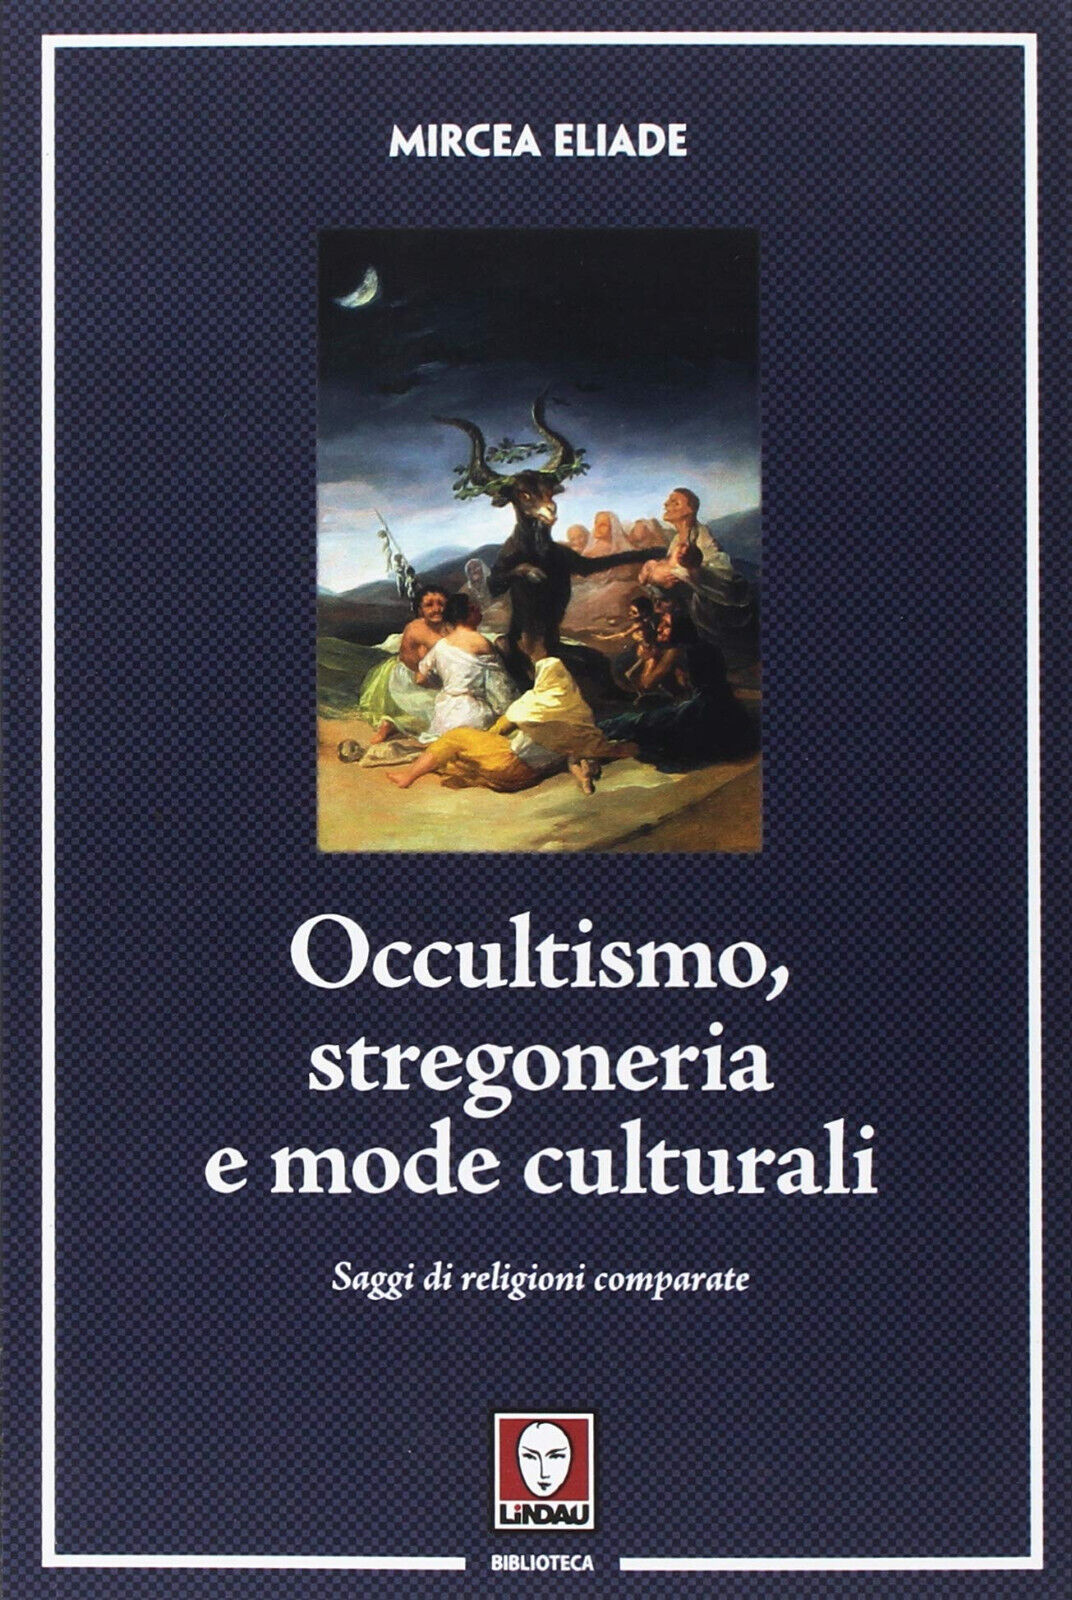 Occultismo, stregoneria e mode culturali - Mircea Eliade - Lindau, 2018 libro usato